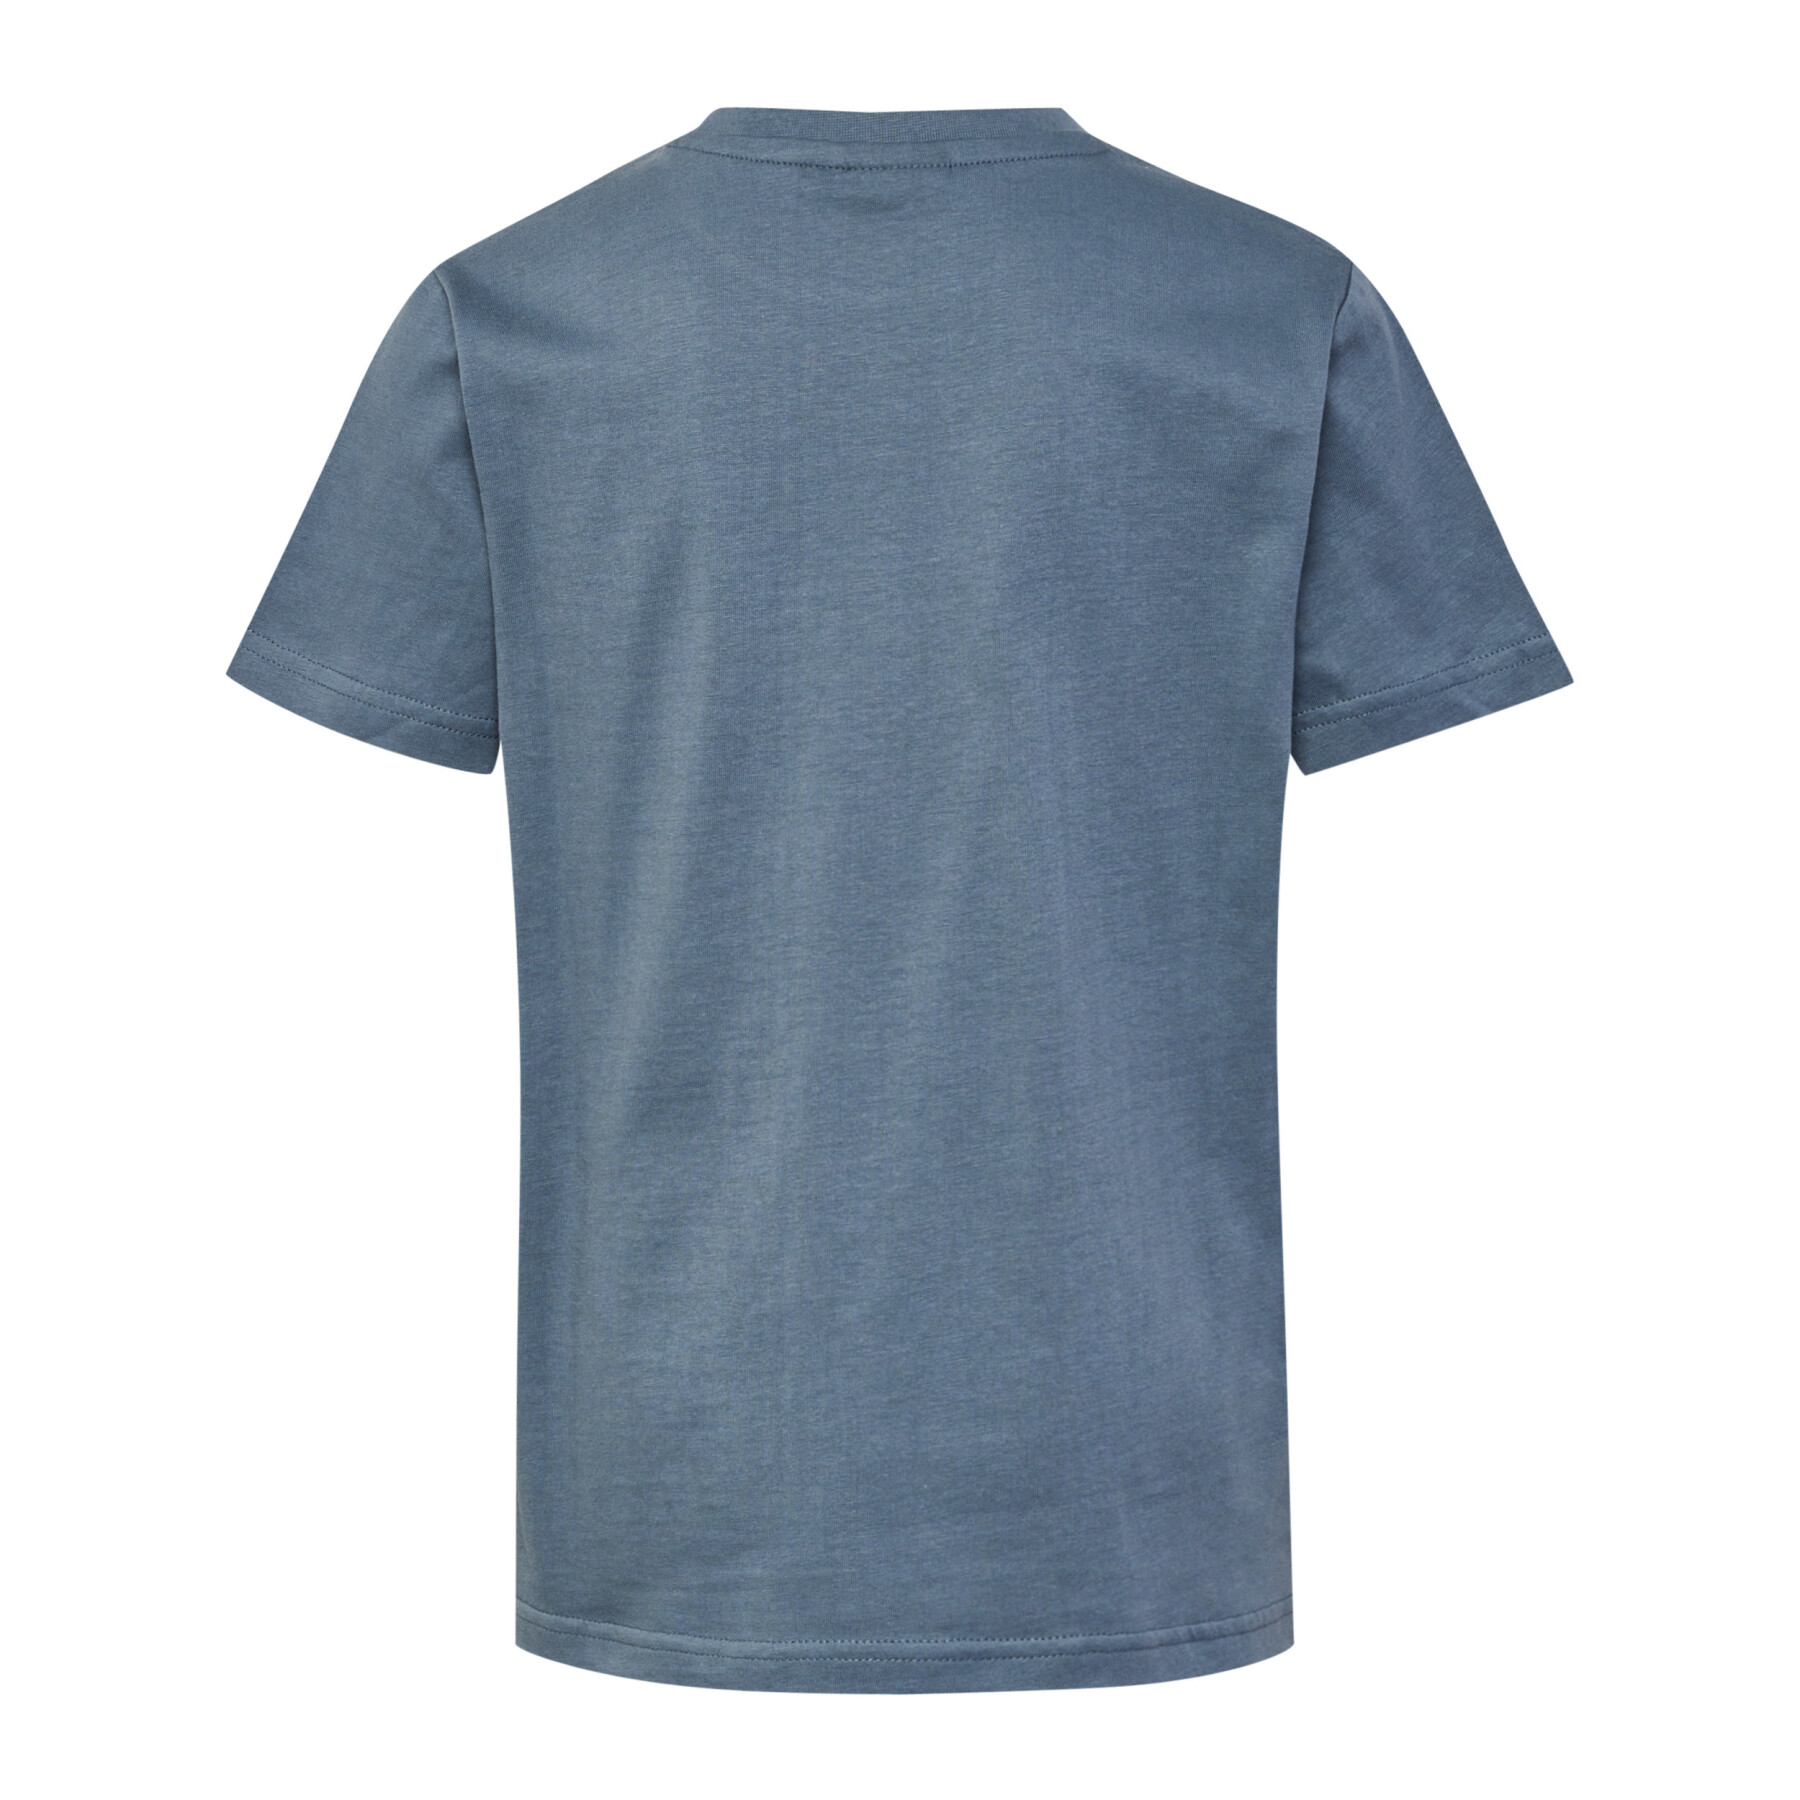 T-Shirt Hummel Tres